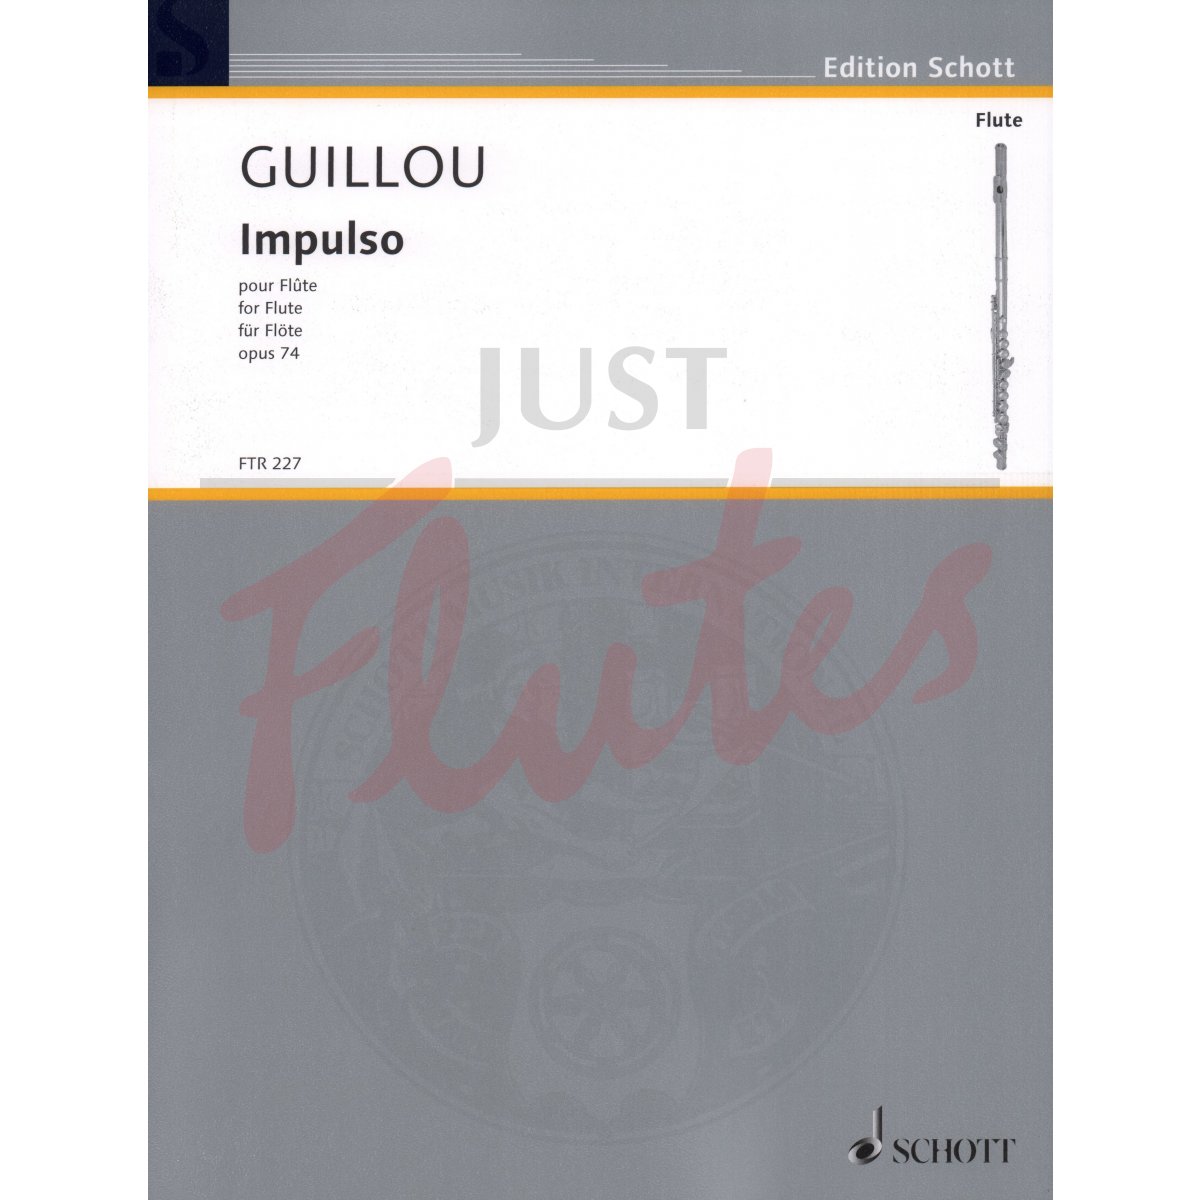 Impulso for Solo Flute